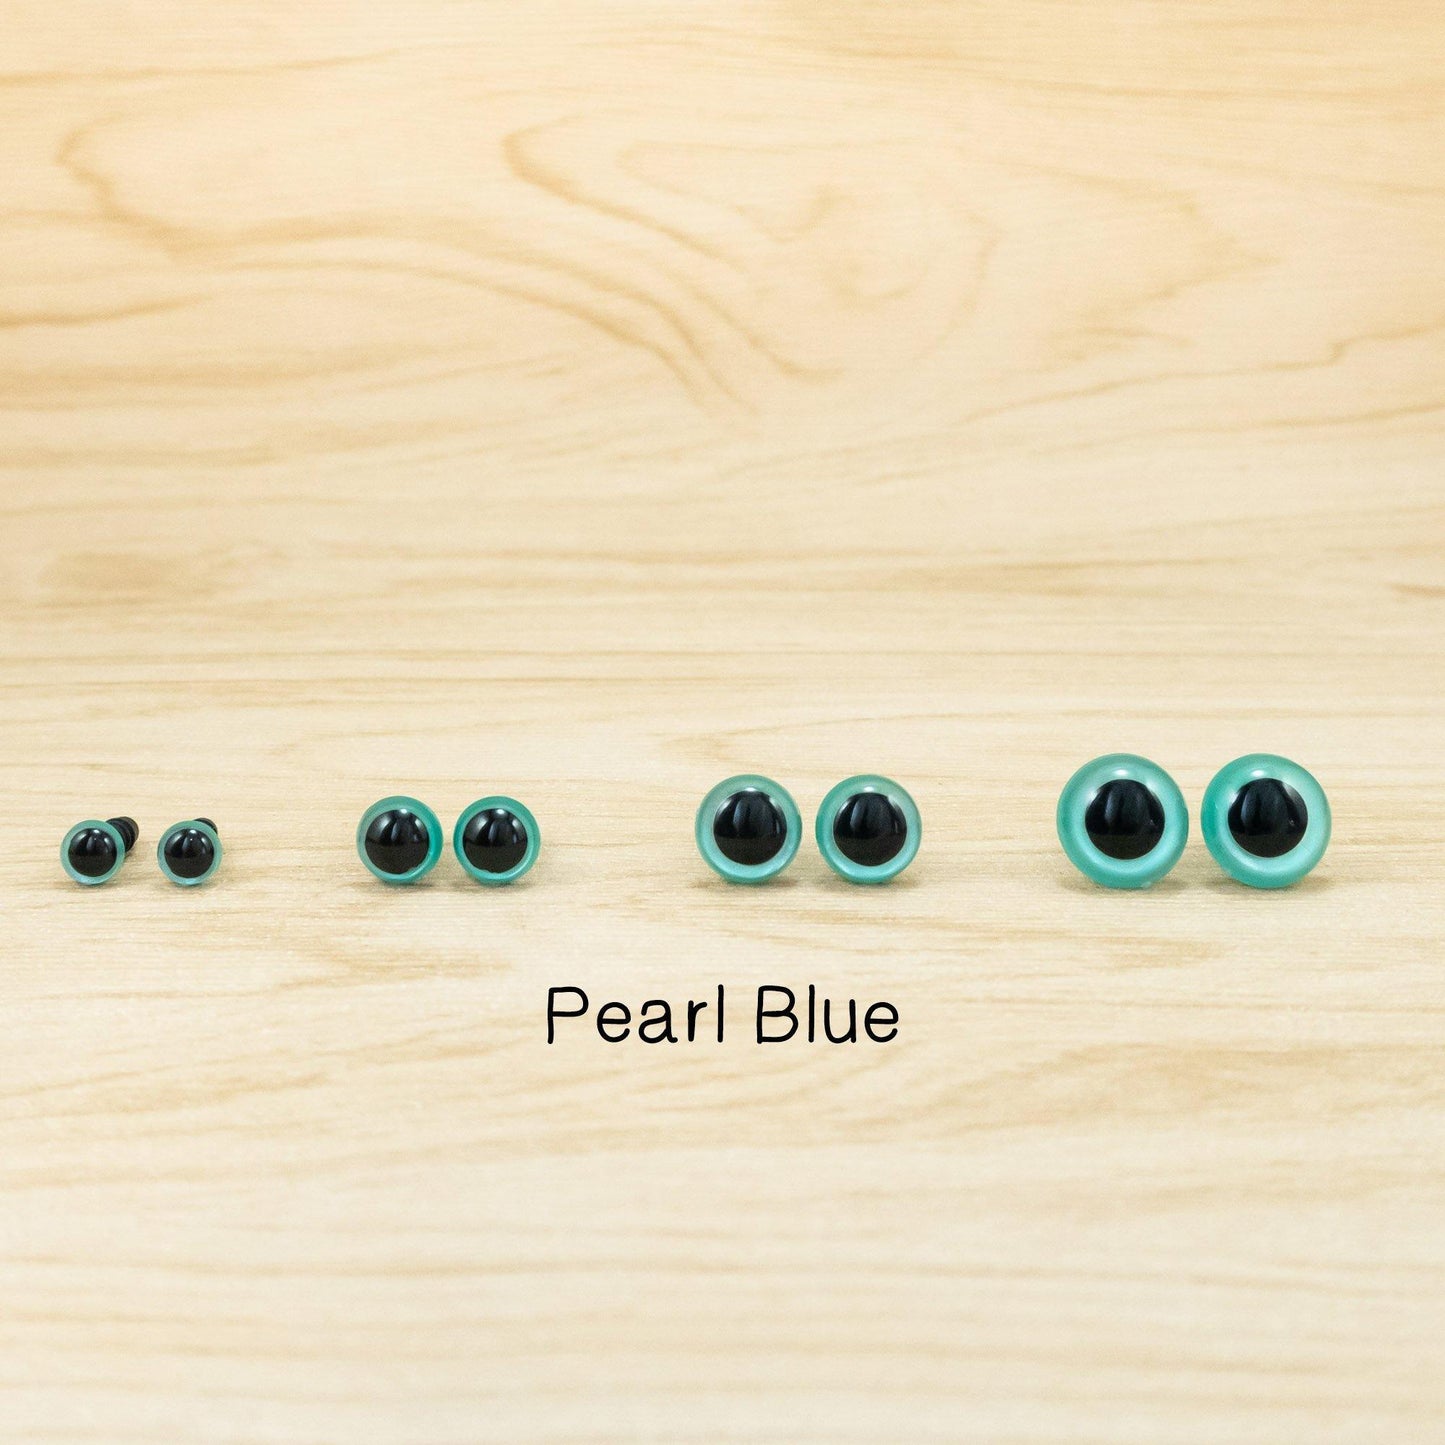 Pearl Color Safety Eyes for Amigurumi - Snacksies Handicraft